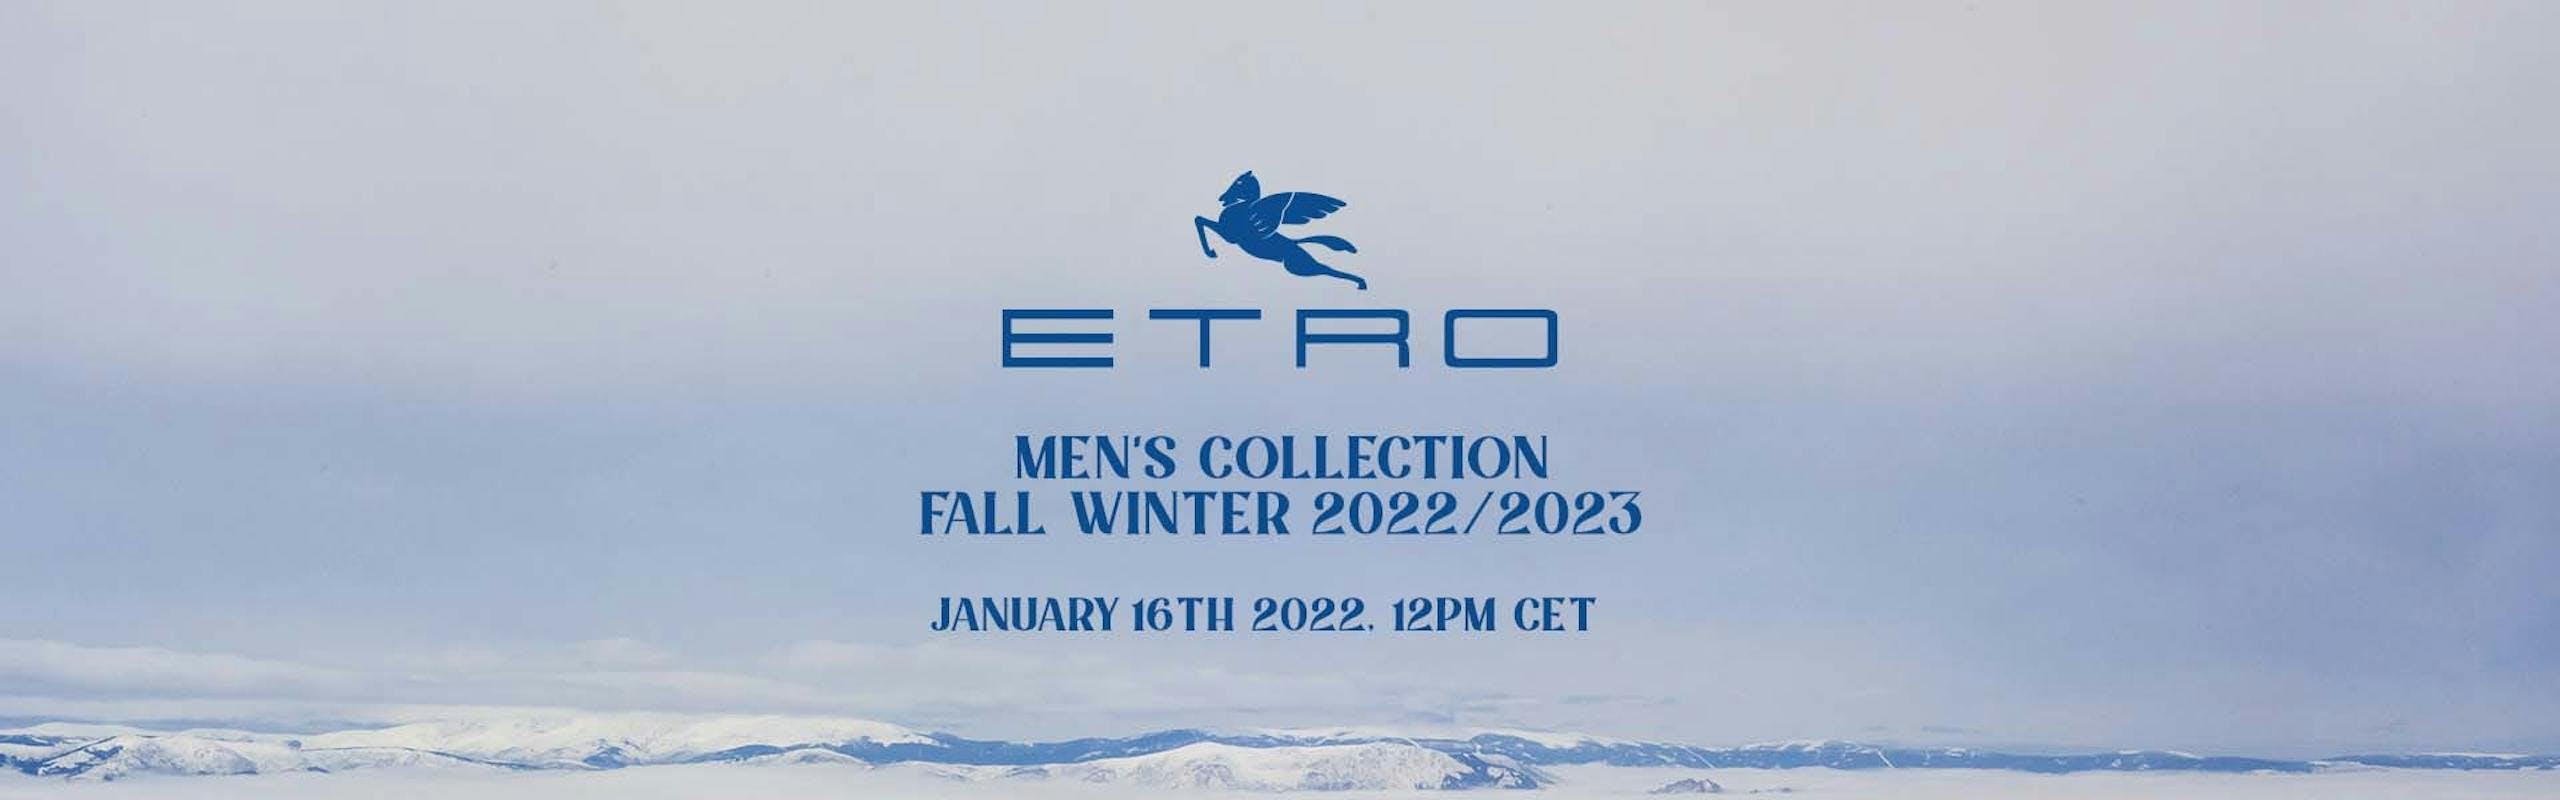 Nella foto Etro la sfilata uomo Autunno Inverno 2022 